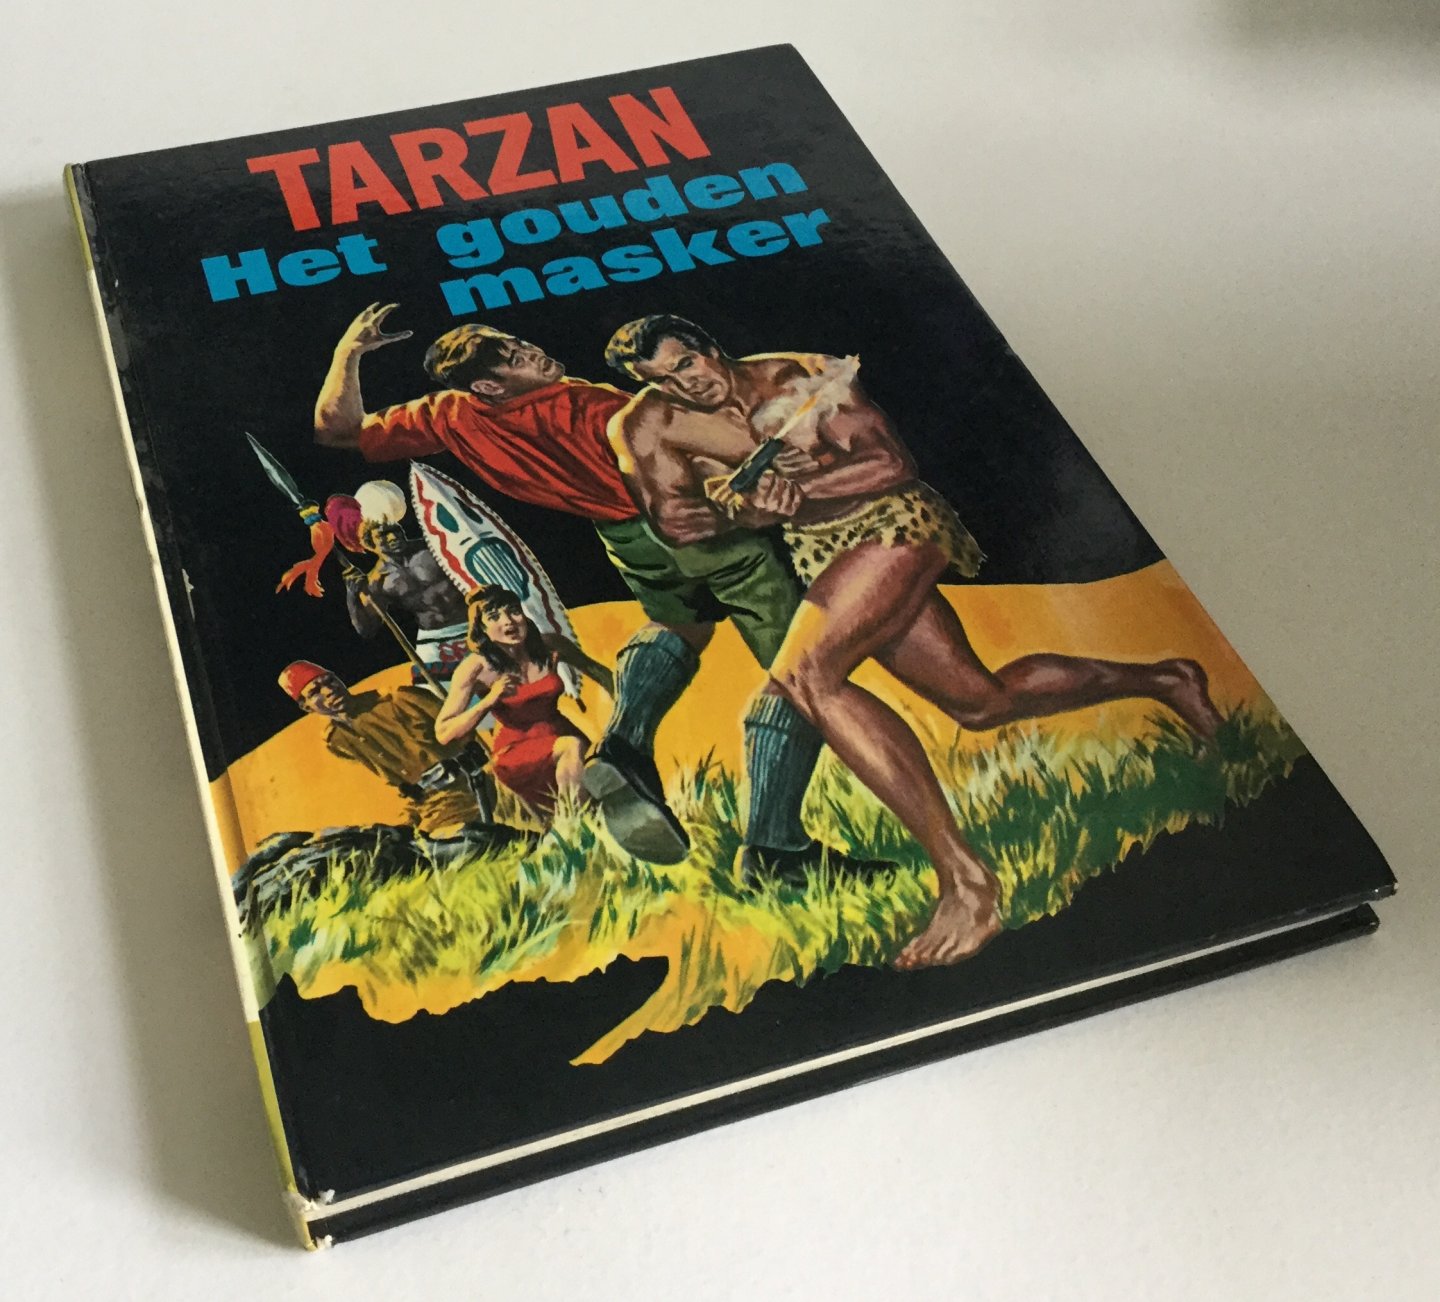 Fox, Jesse - Tarzan 1 - Het gouden masker